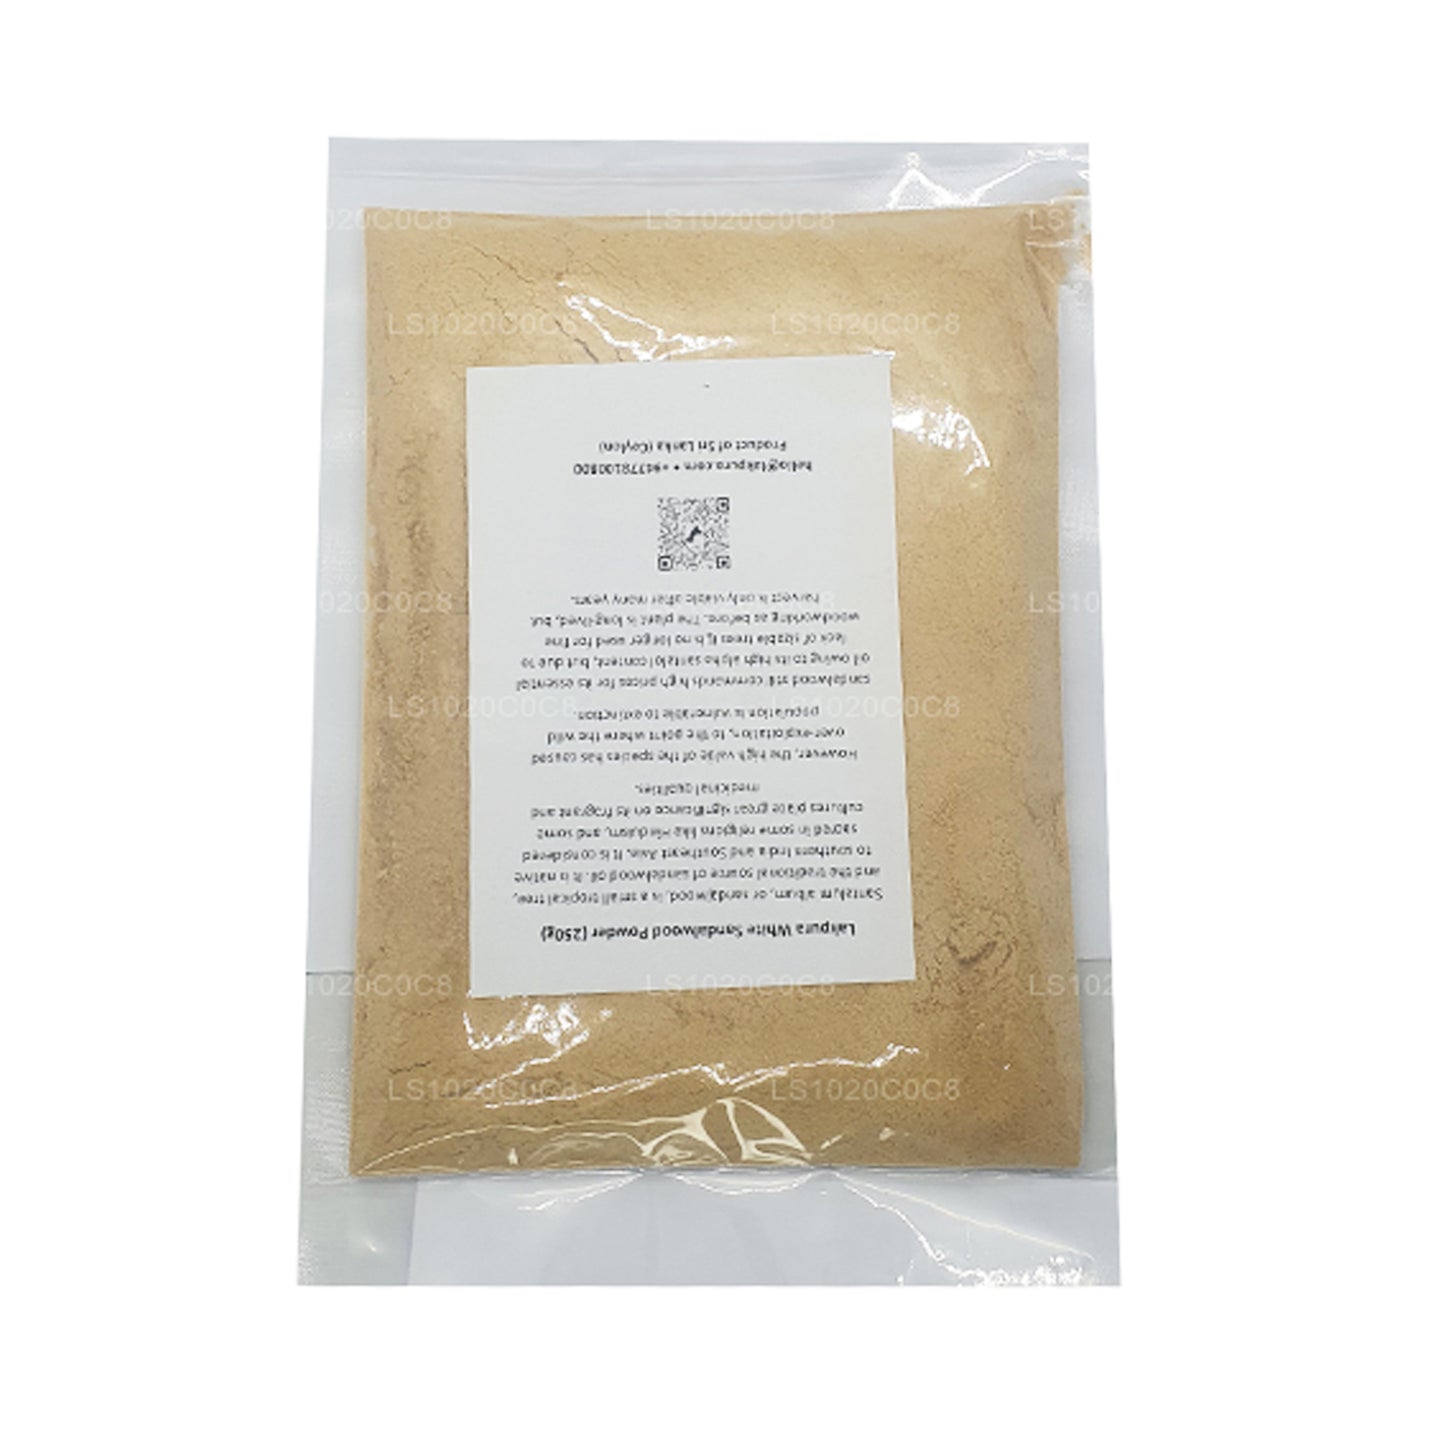 Lakpura wit sandelhoutpoeder (100 g)